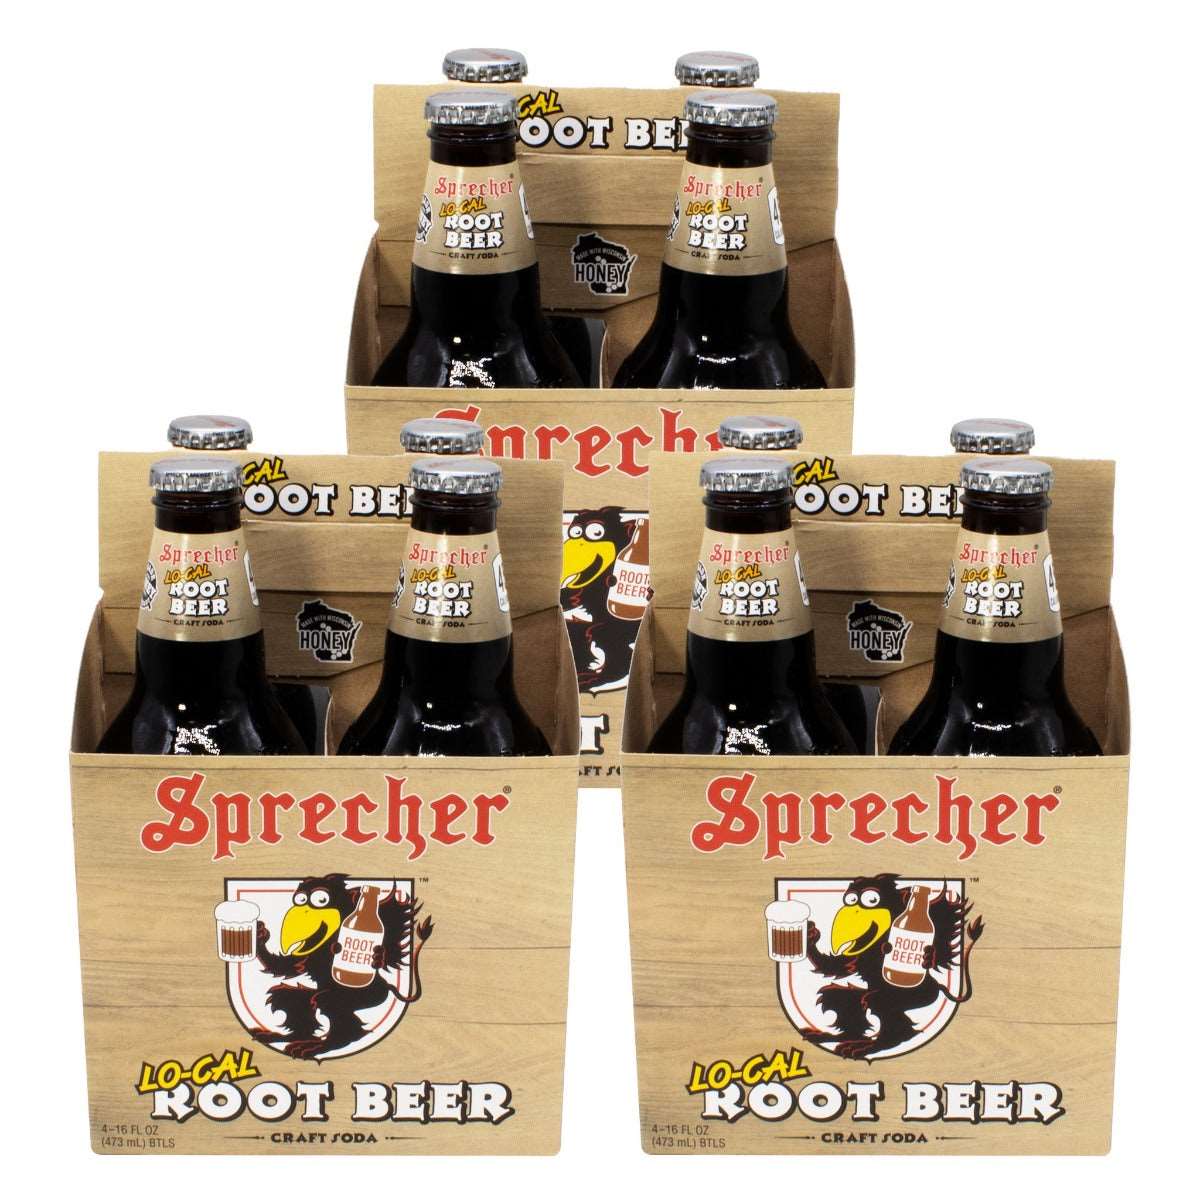 3 4-packs of Sprecher Lo-Cal Root Beer